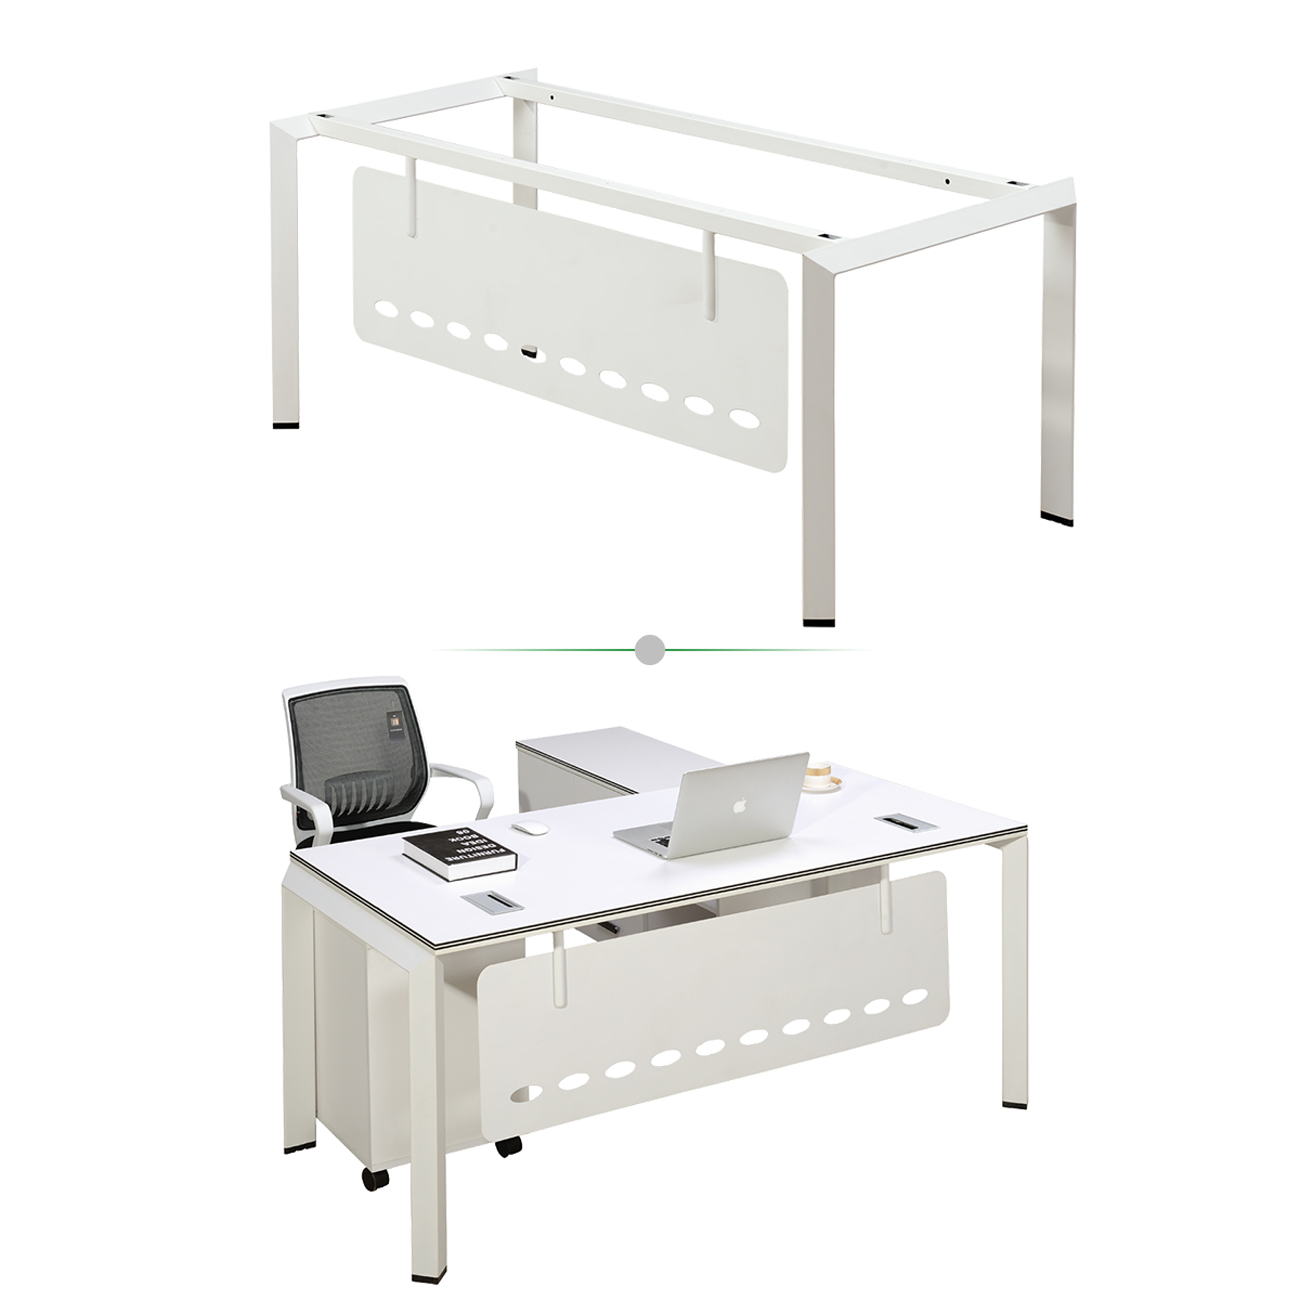 Single Person Office Desk 1.jpg